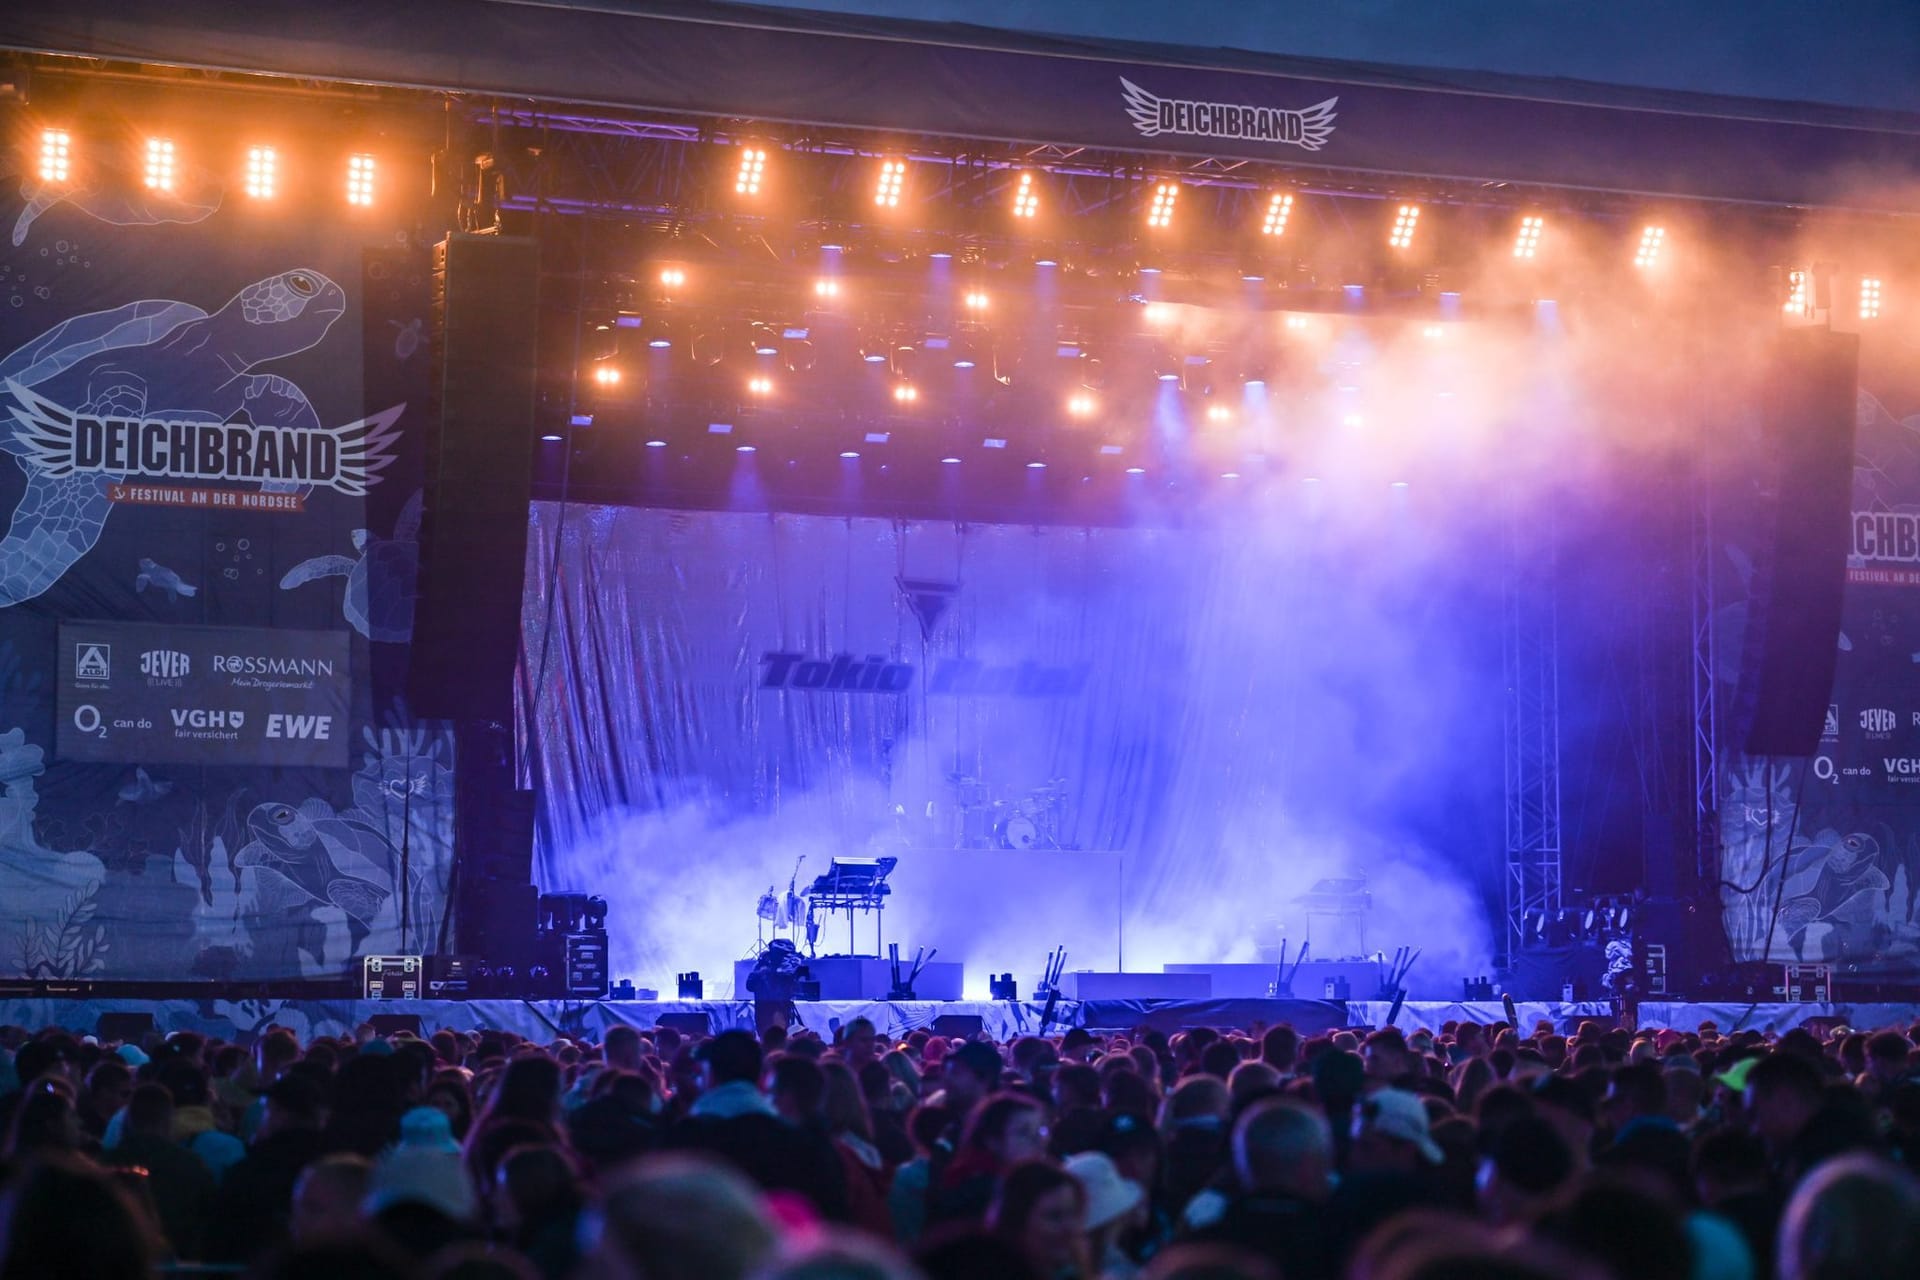 Leere Bühne beim Deichbrand: Die Band Tokio Hotel musste die Show abbrechen und hat die Bühne verlassen.